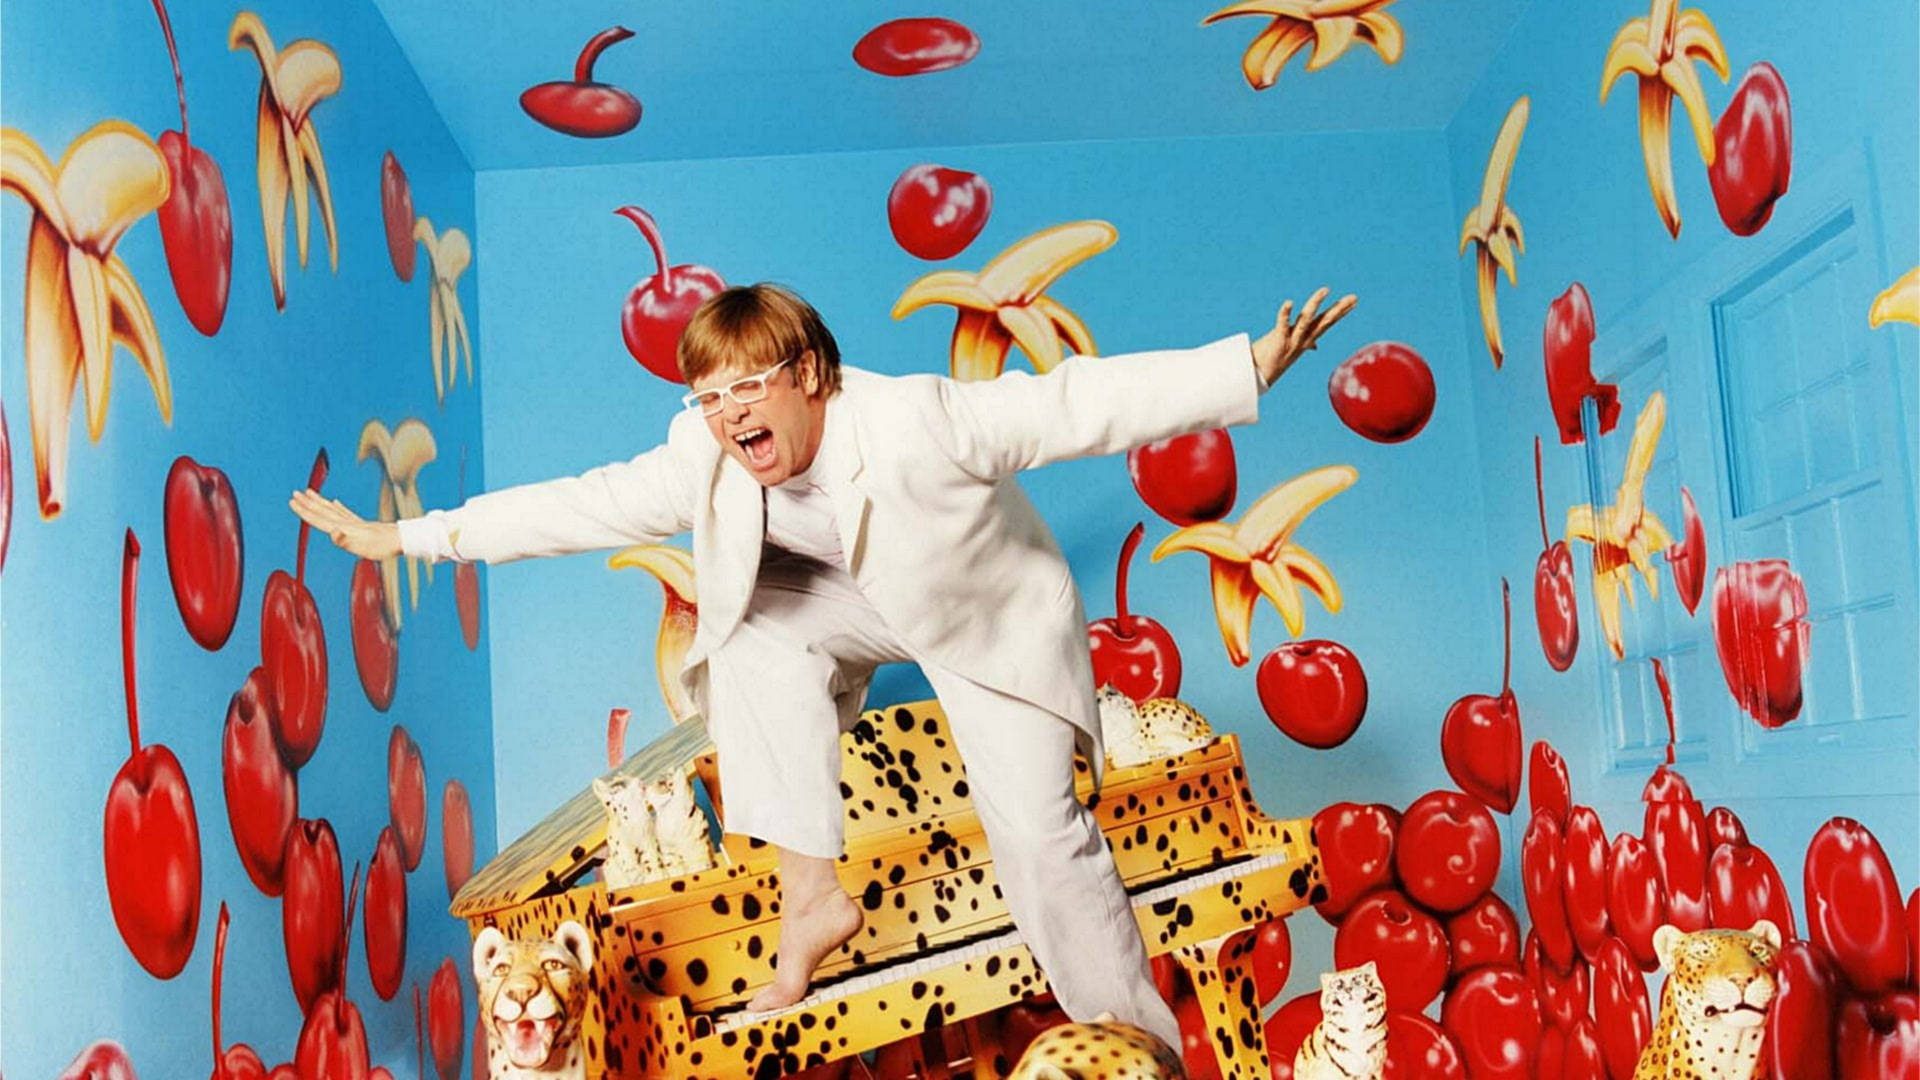 Fun Elton John Fruits Photo